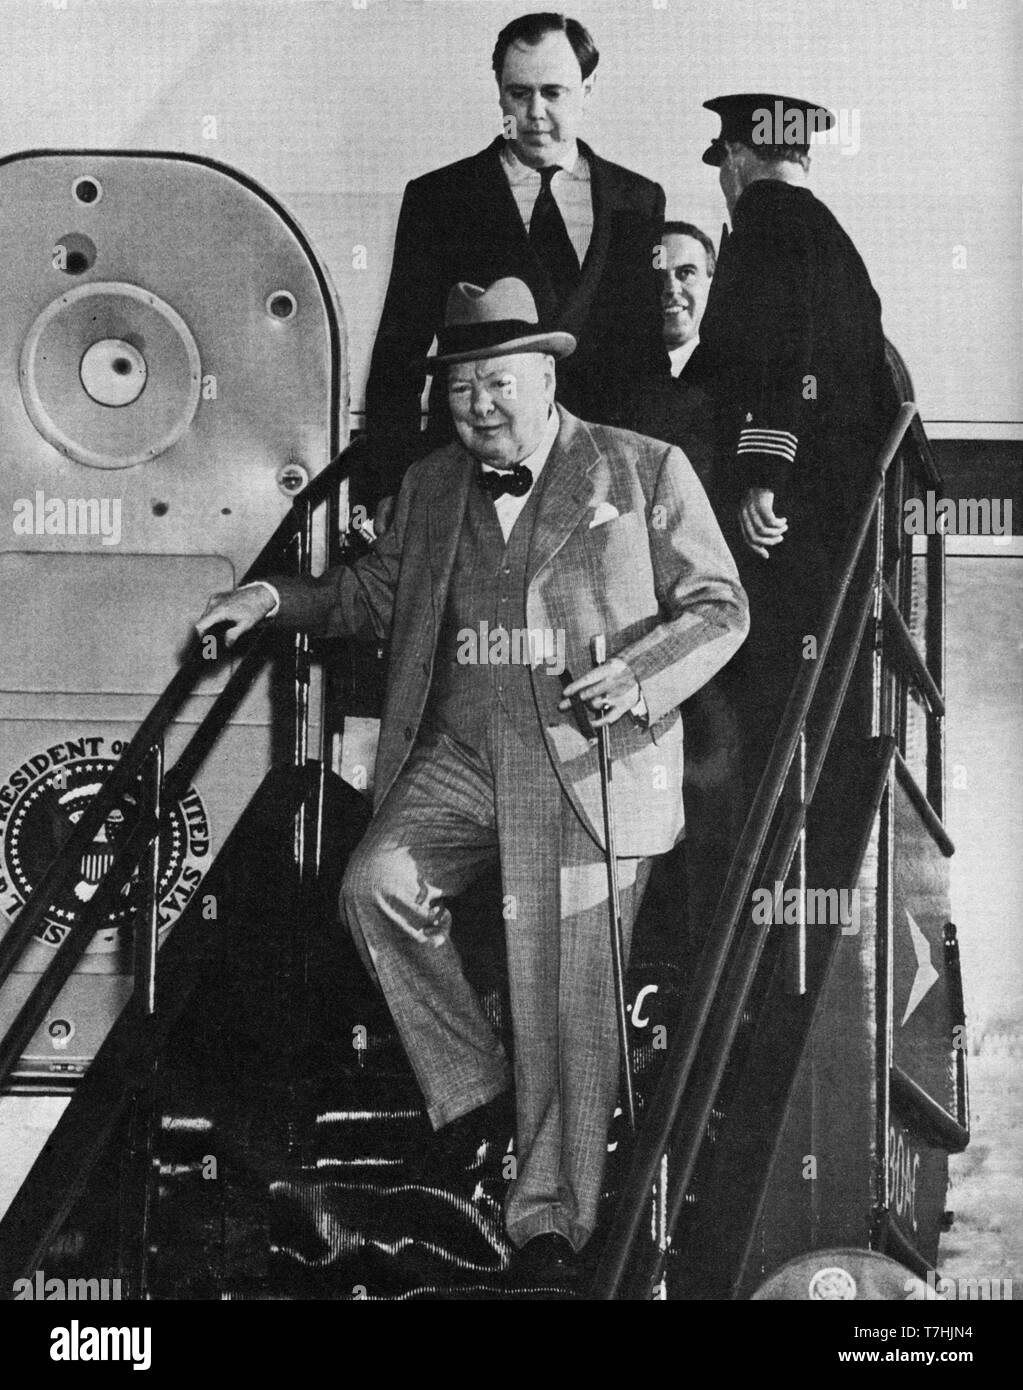 Winston Churchill arriva a Bermuda con il genero Christopher Soames e il segretario privato J. Colville. 7 gennaio 1953 Foto Stock